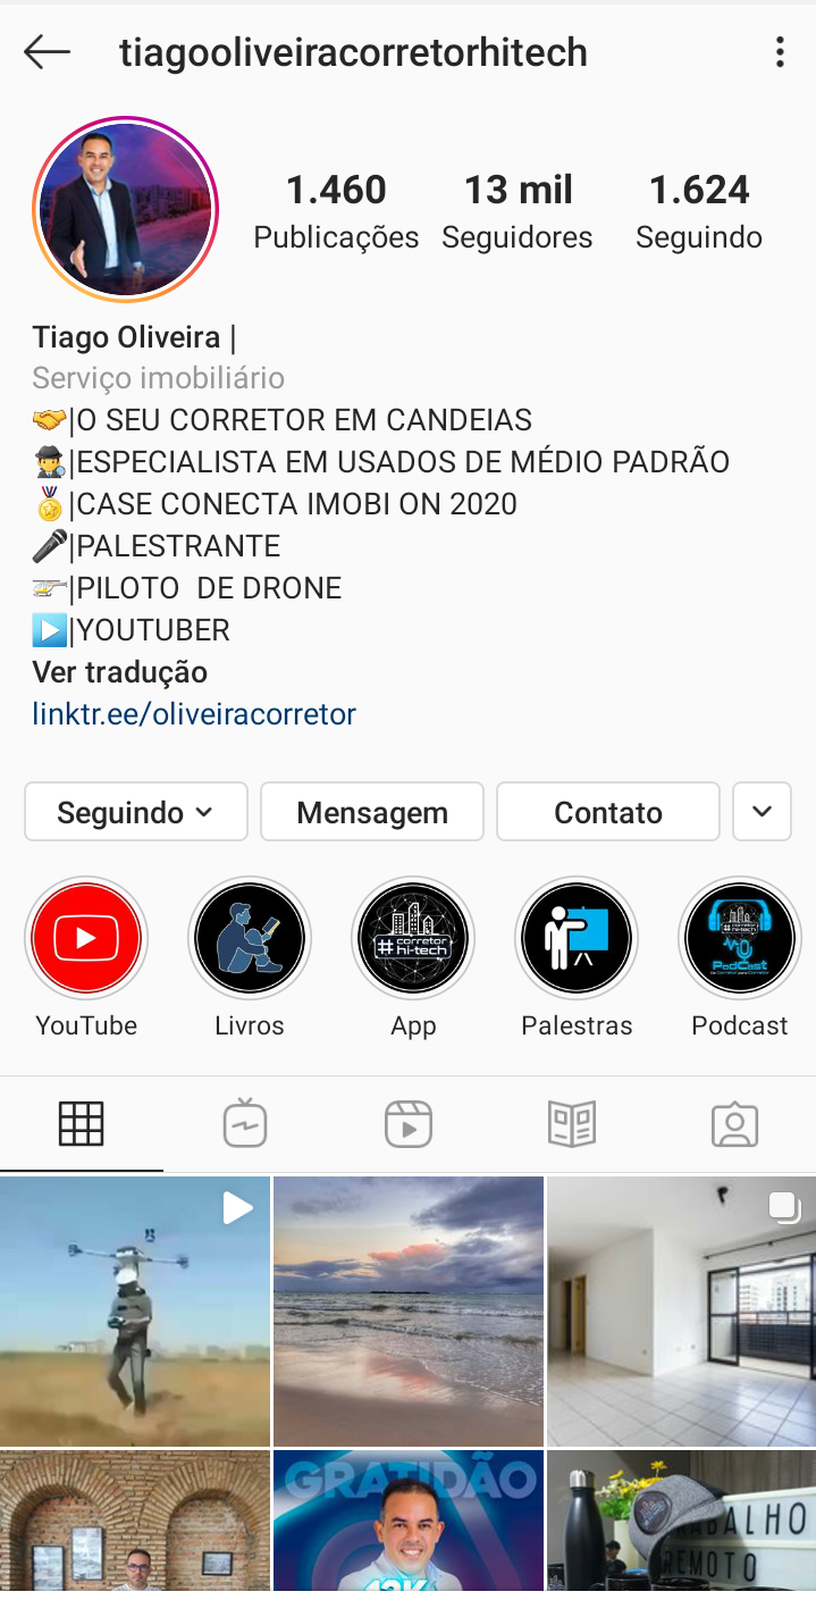 Biografia no Instagram do corretor de imóveis Tiago Oliveira 